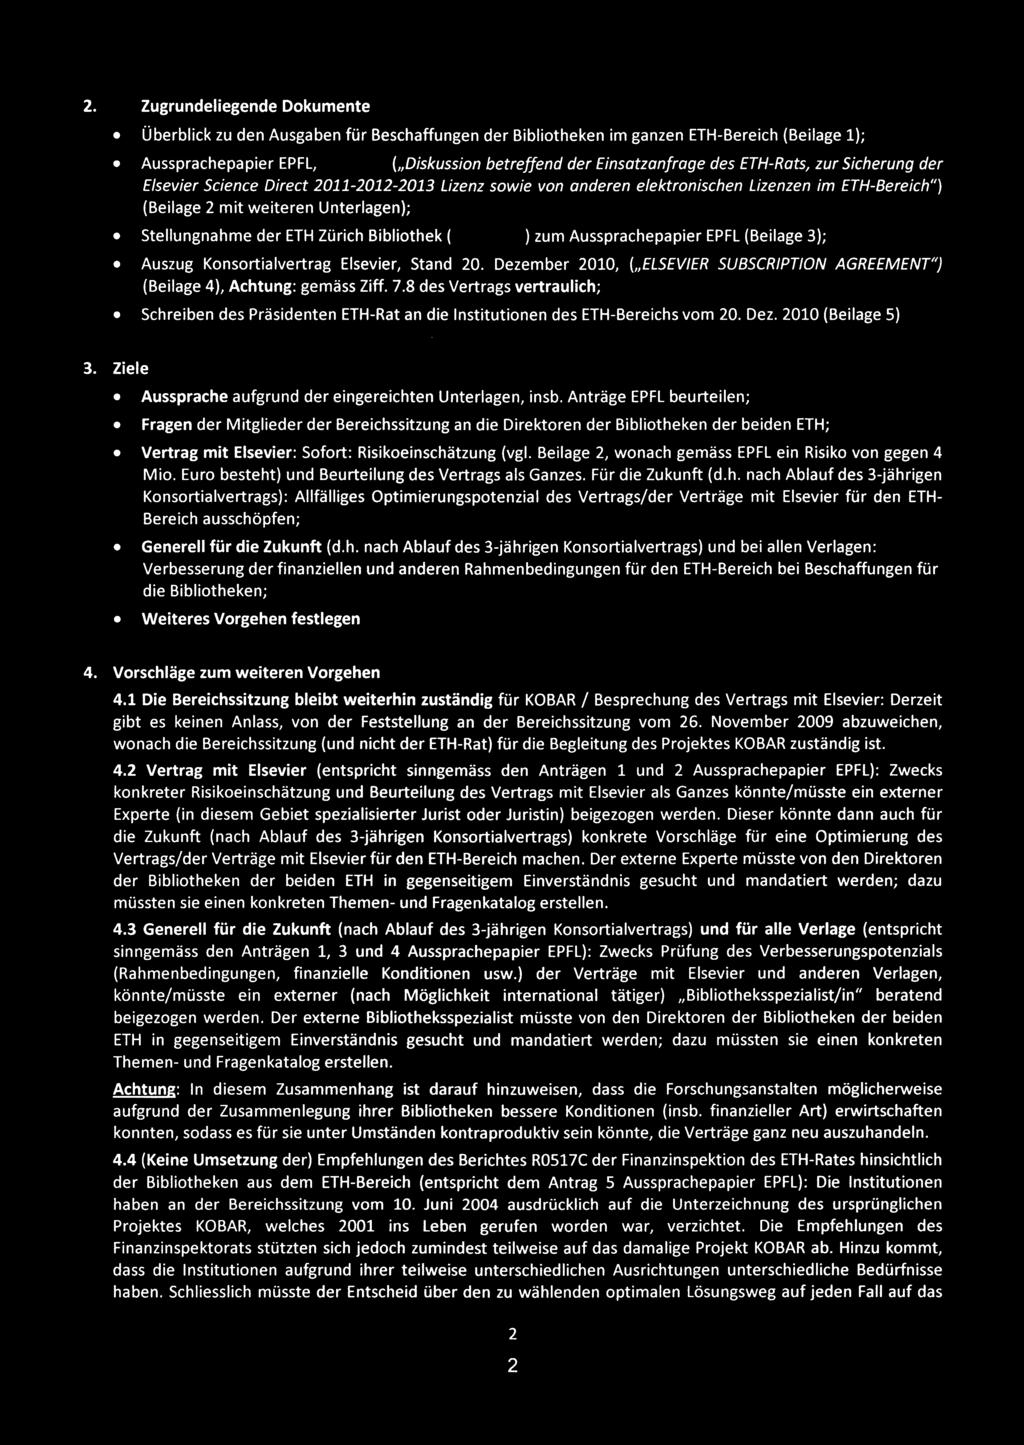 Bibliothek ( -- ) zum Aussprachepapier EPFL (Beilage 3); Auszug Konsortialvertrag Elsevier, Stand 20. Dezember 2010, (11ELSEVIER SUBSCRIPTION AGREEMENT") (Beilage 4), Achtung: gemäss Ziff. 7.